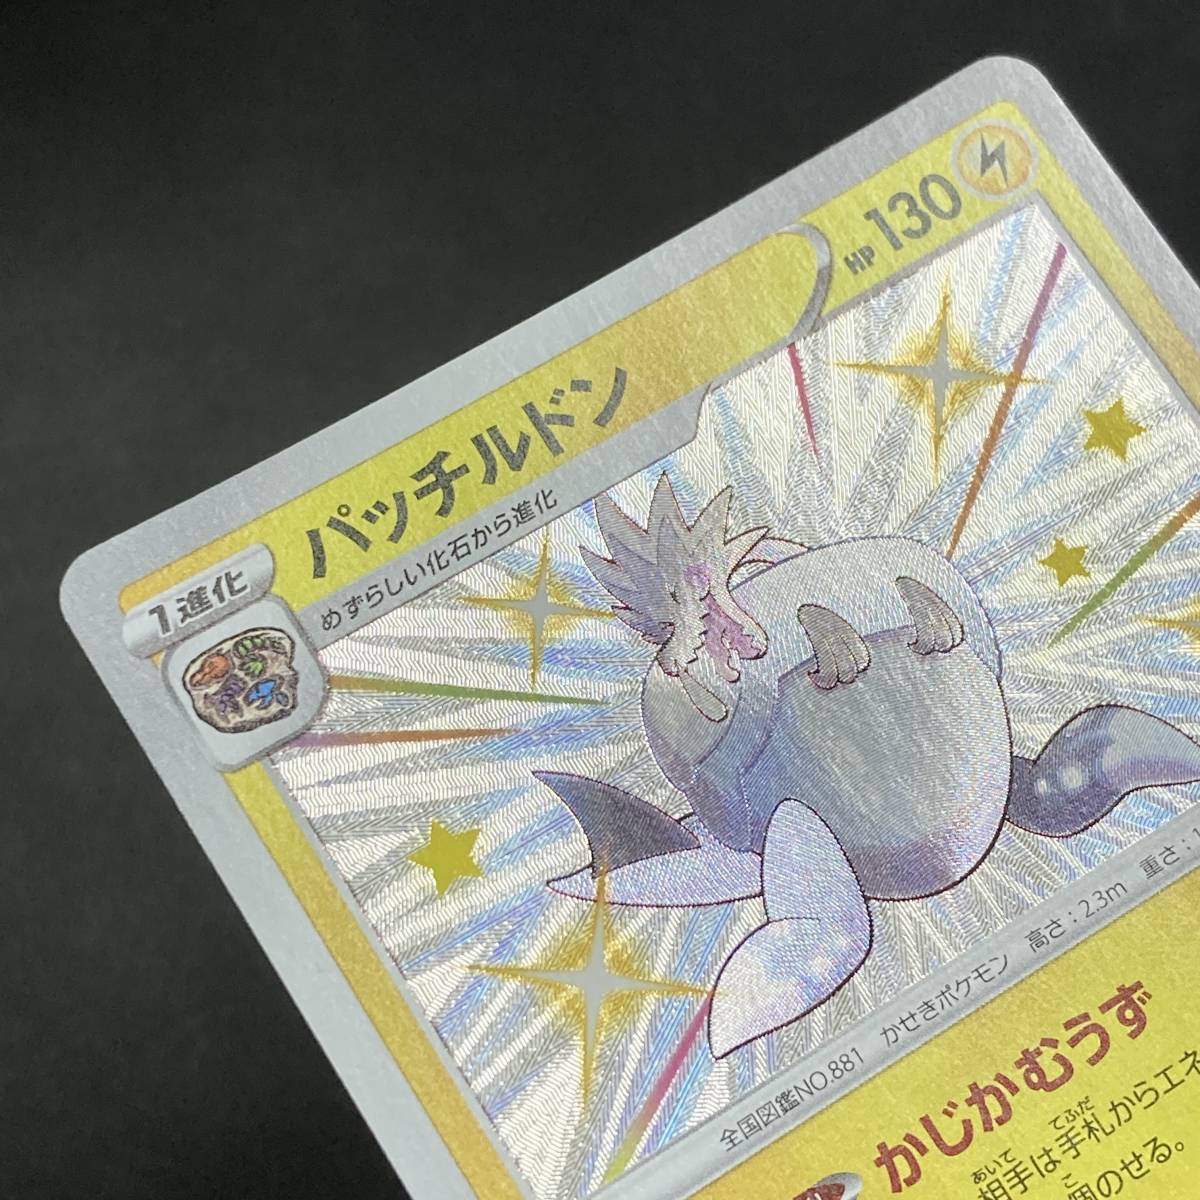 Arctozolt 245/190 S Holo S4a Shiny Star V 2020 Pokemon Card Japanese ポケモン カード パッチルドン ポケモン ポケカ 230430_画像6